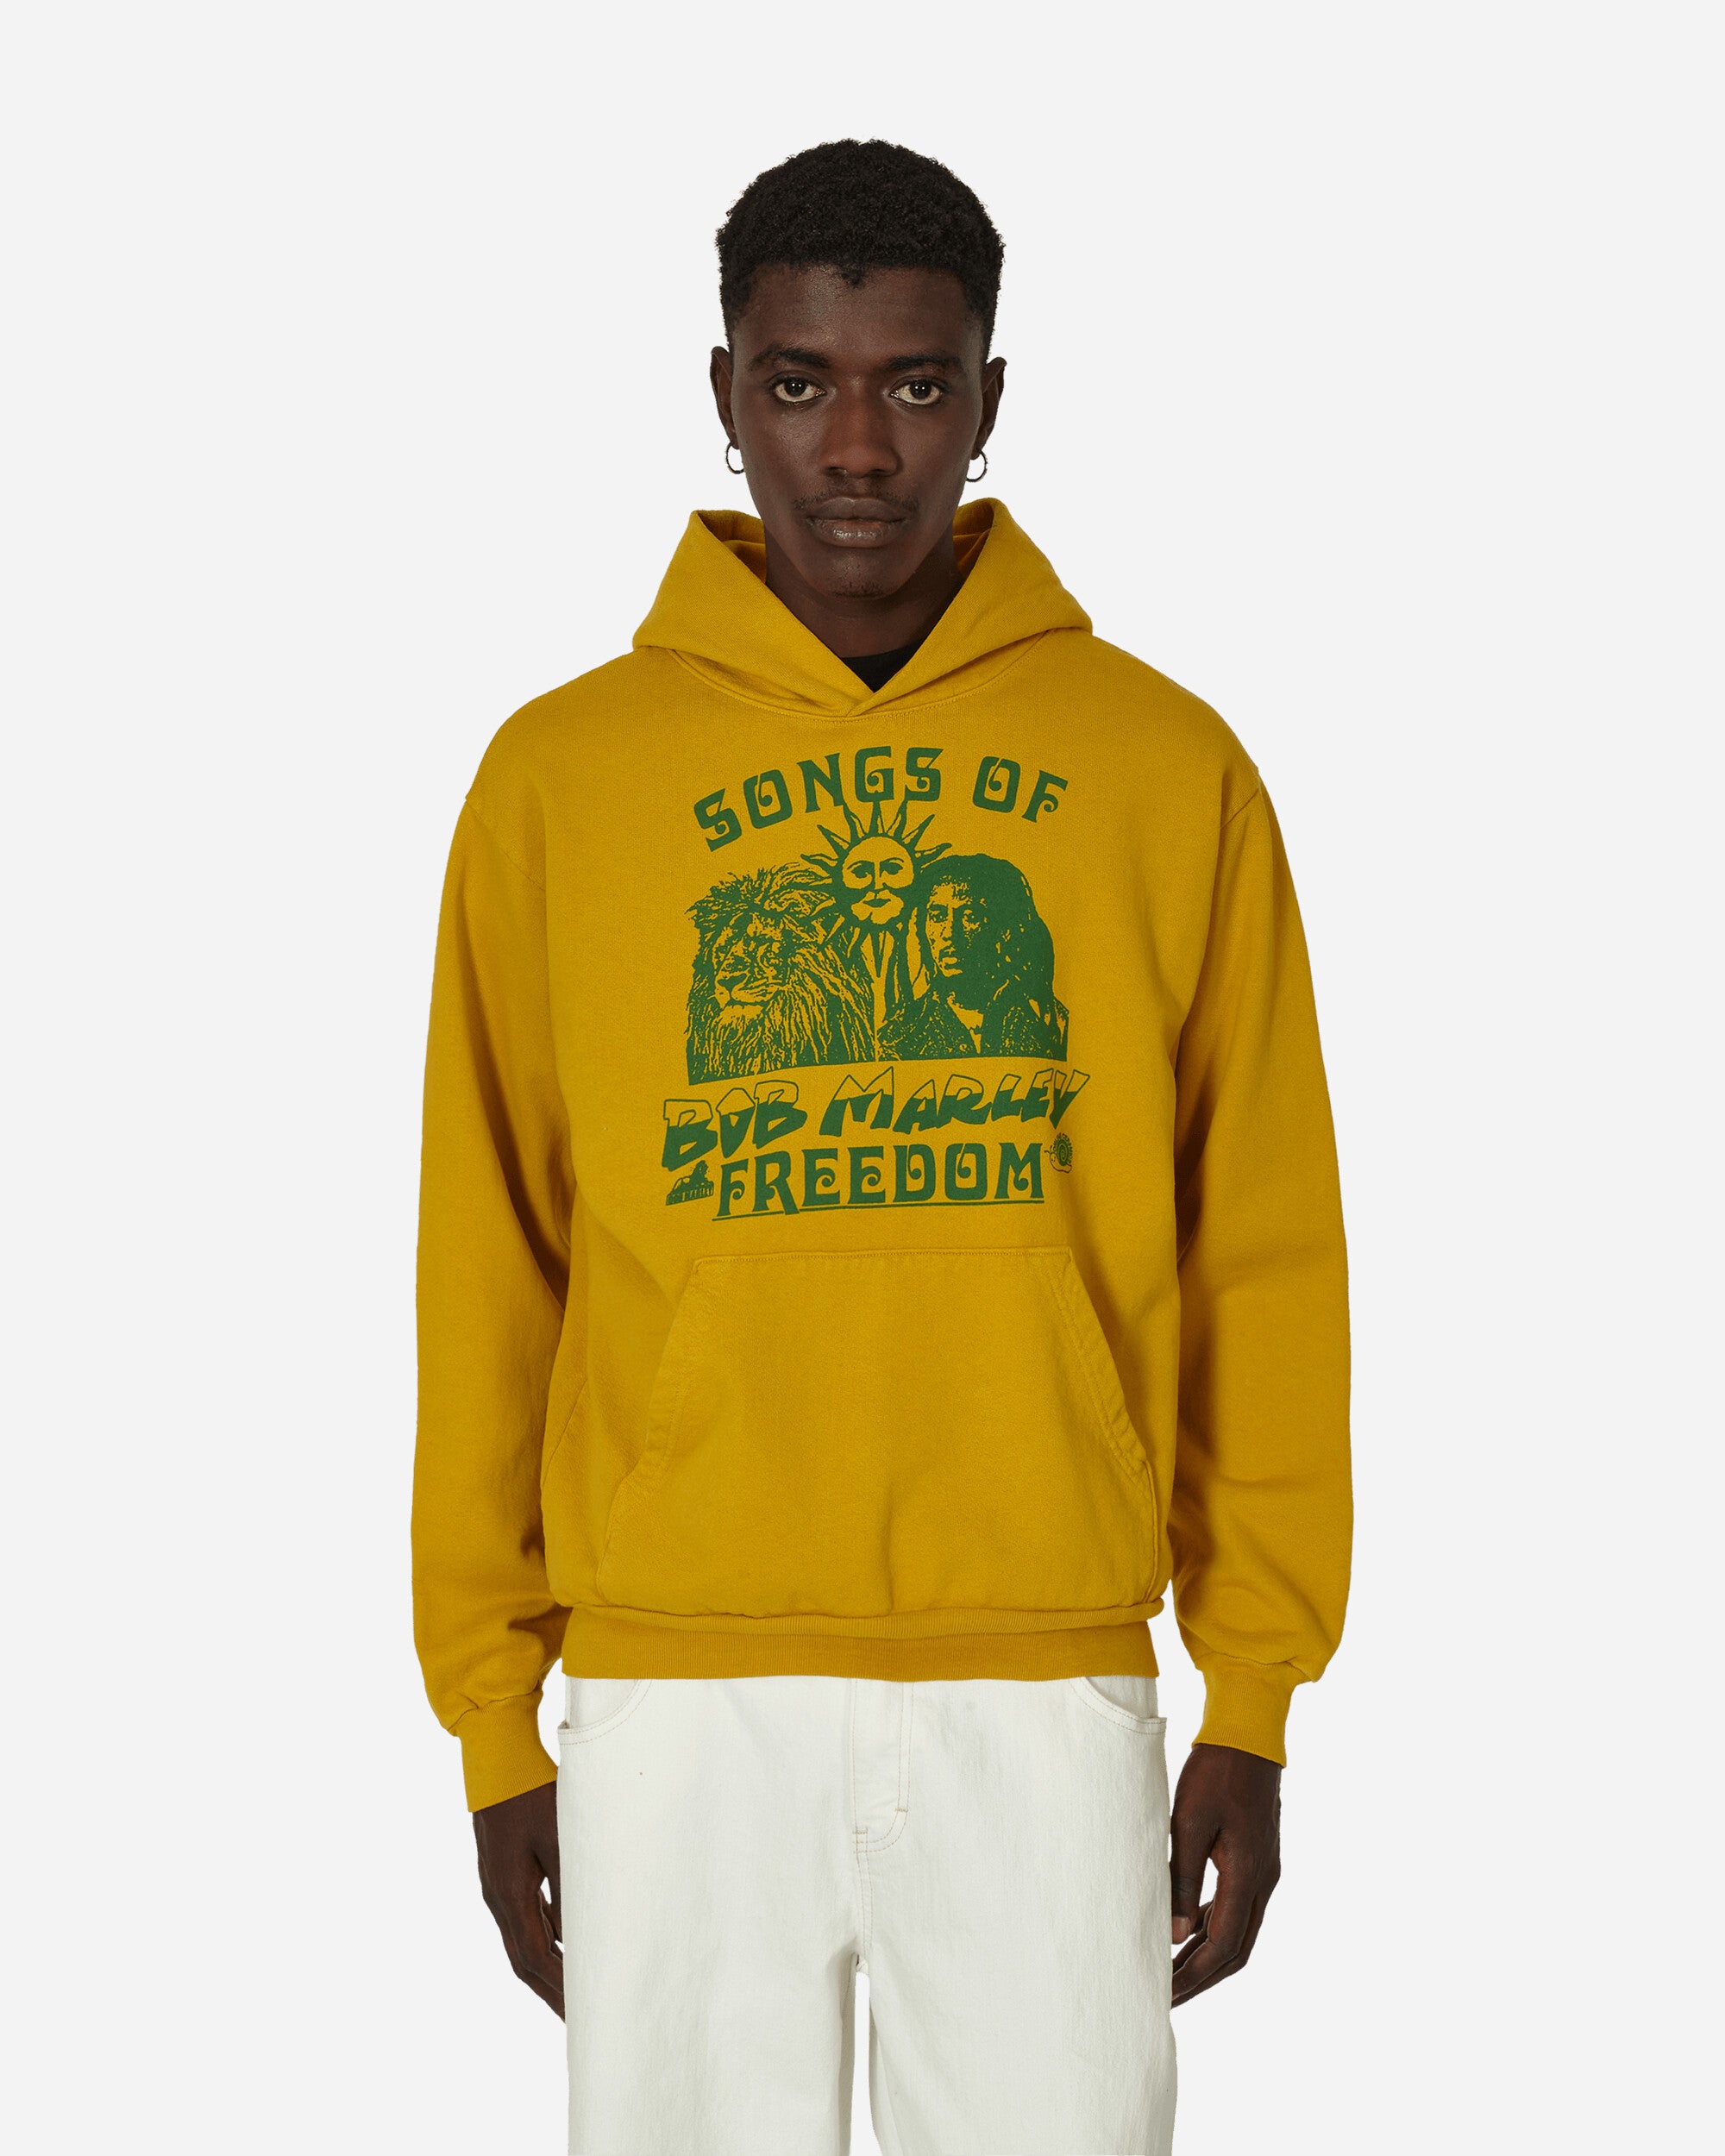 Bob Marley Songs Of Freedom Hooded Sweatshirt Dijon